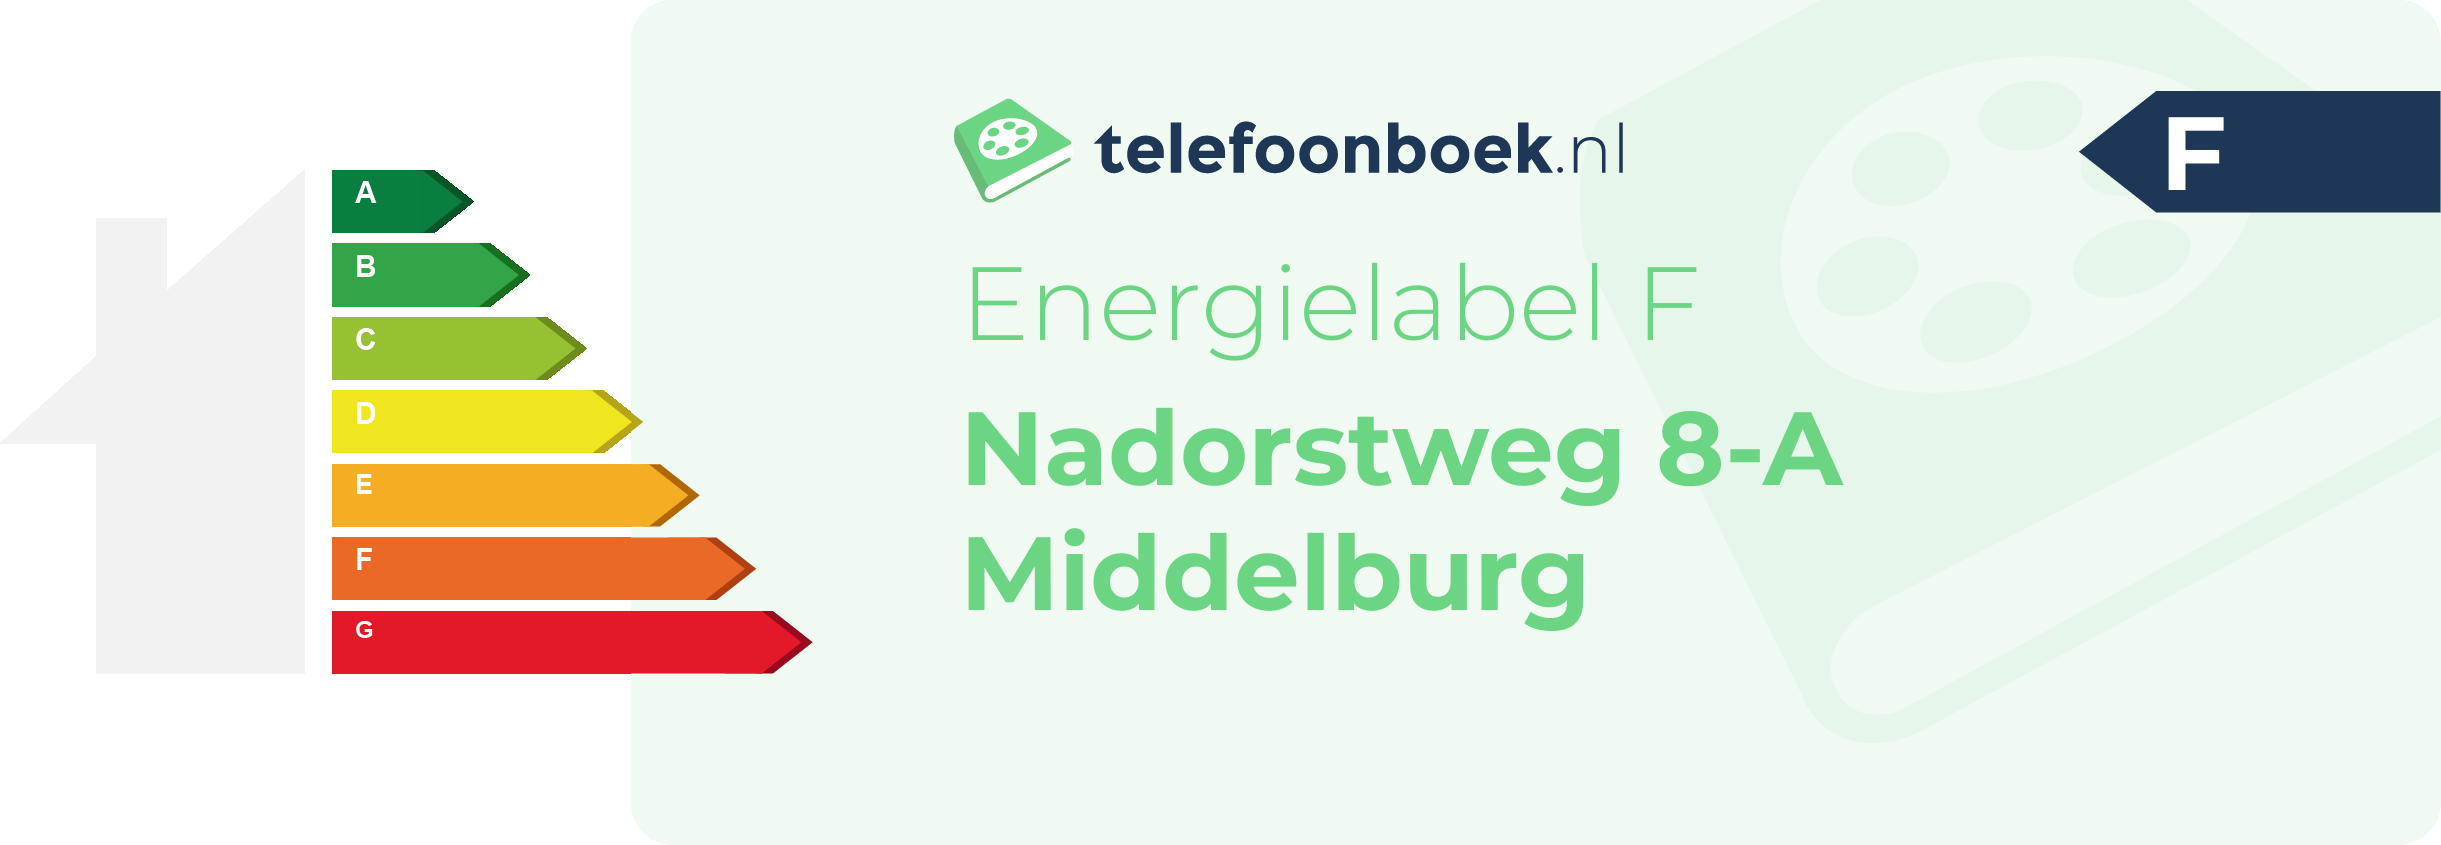 Energielabel Nadorstweg 8-A Middelburg